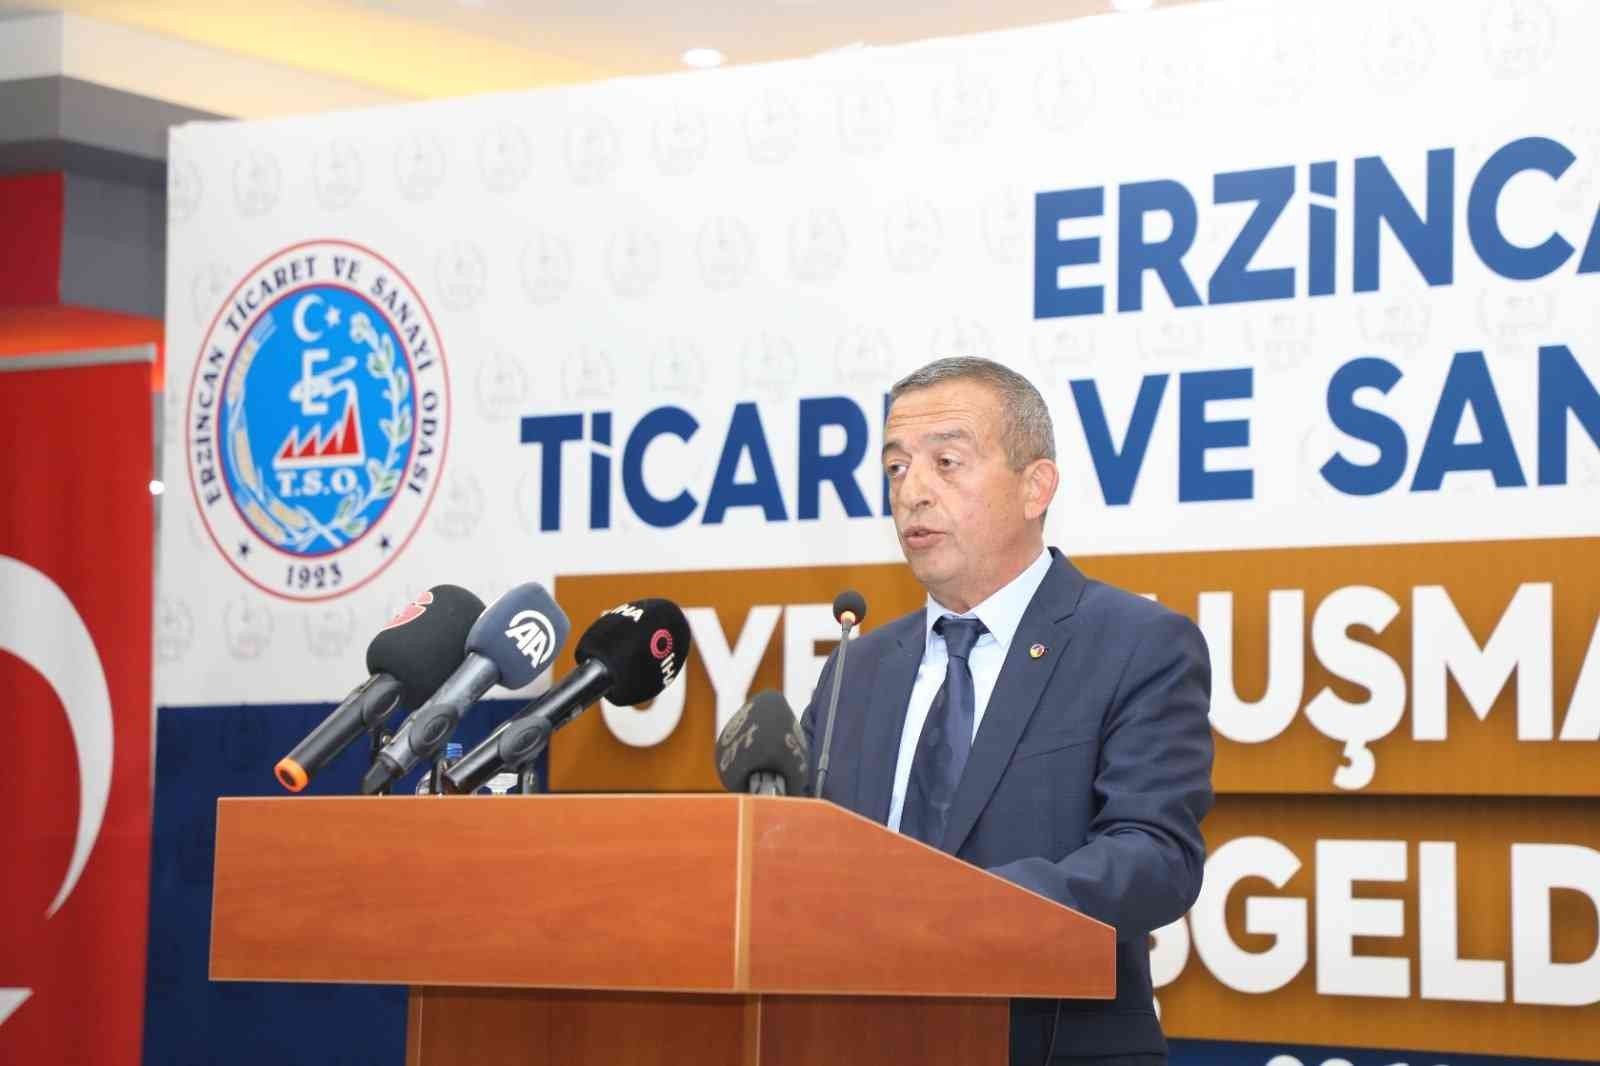 Erzincan TSO Başkanı Tanoğlu: “Salgının olumsuz etkilerine rağmen, odamızın faaliyetleri hızlı bir şekilde devam etti ve pek çok projenin hayata geçirilmesine katkı sağladık” #erzincan